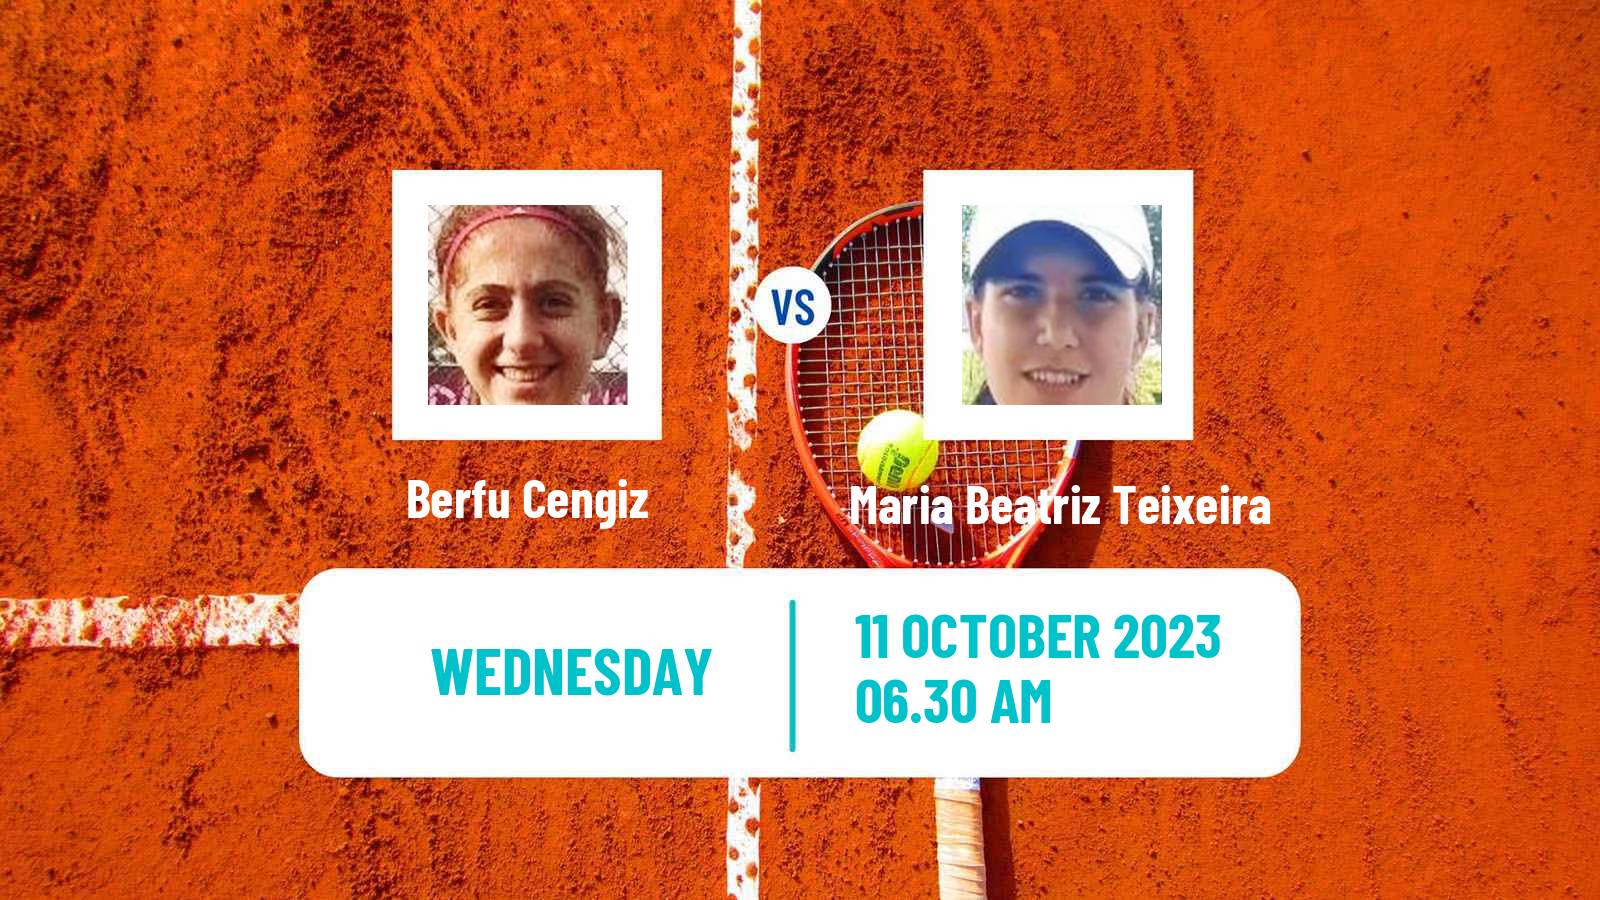 Tennis ITF W40 Quinta Do Lago Women Berfu Cengiz - Maria Beatriz Teixeira